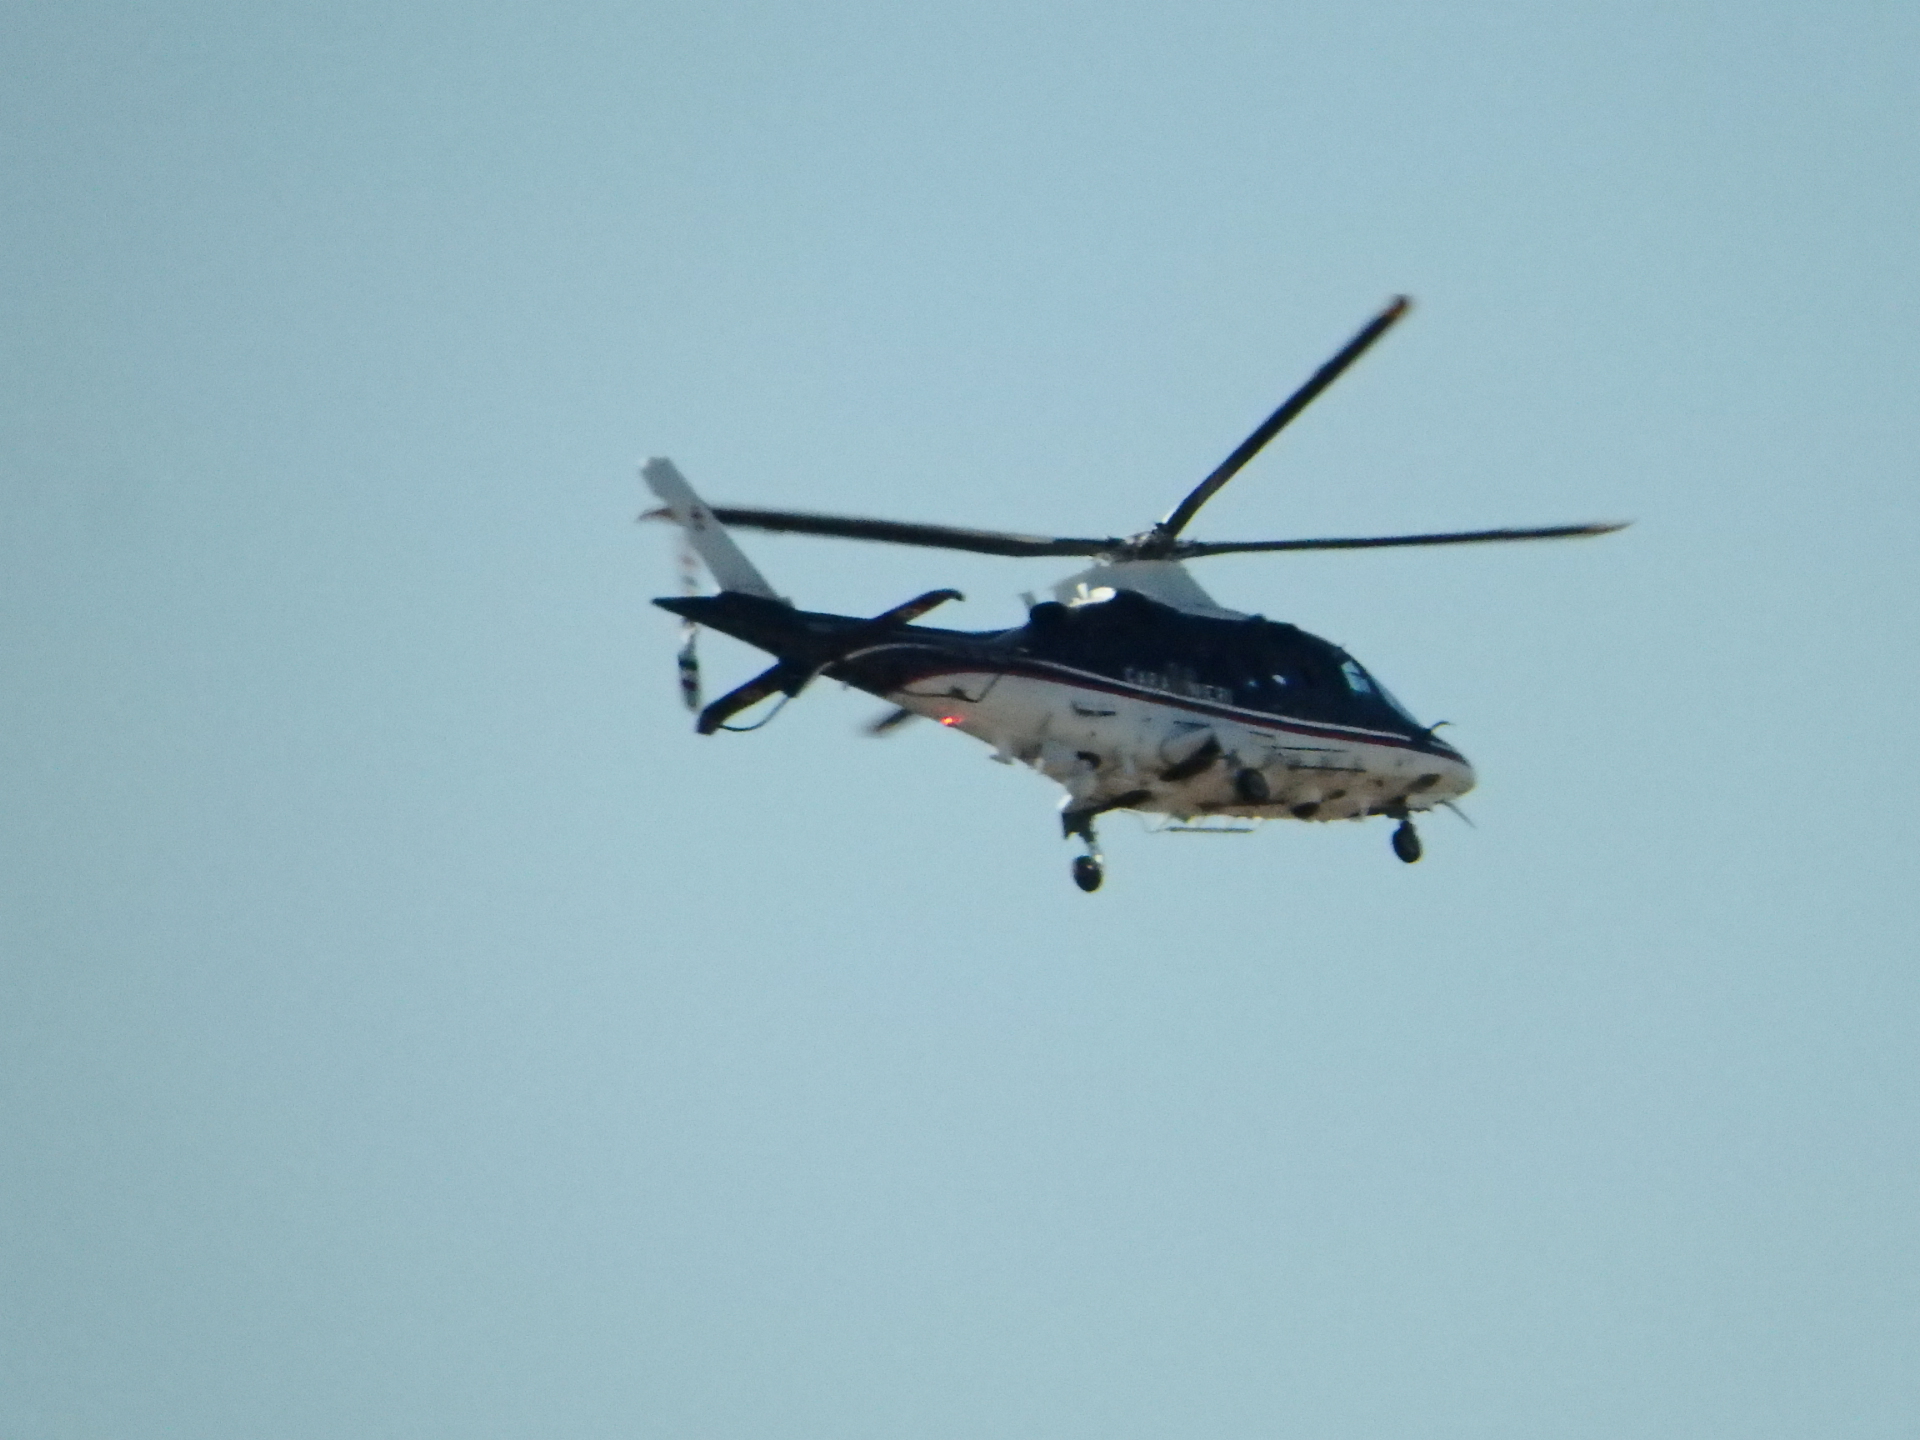 Maltempo: elicottero carabinieri a bassa quota per controllare i cantieri sui tetti fra Saronno, Turate e Rovello